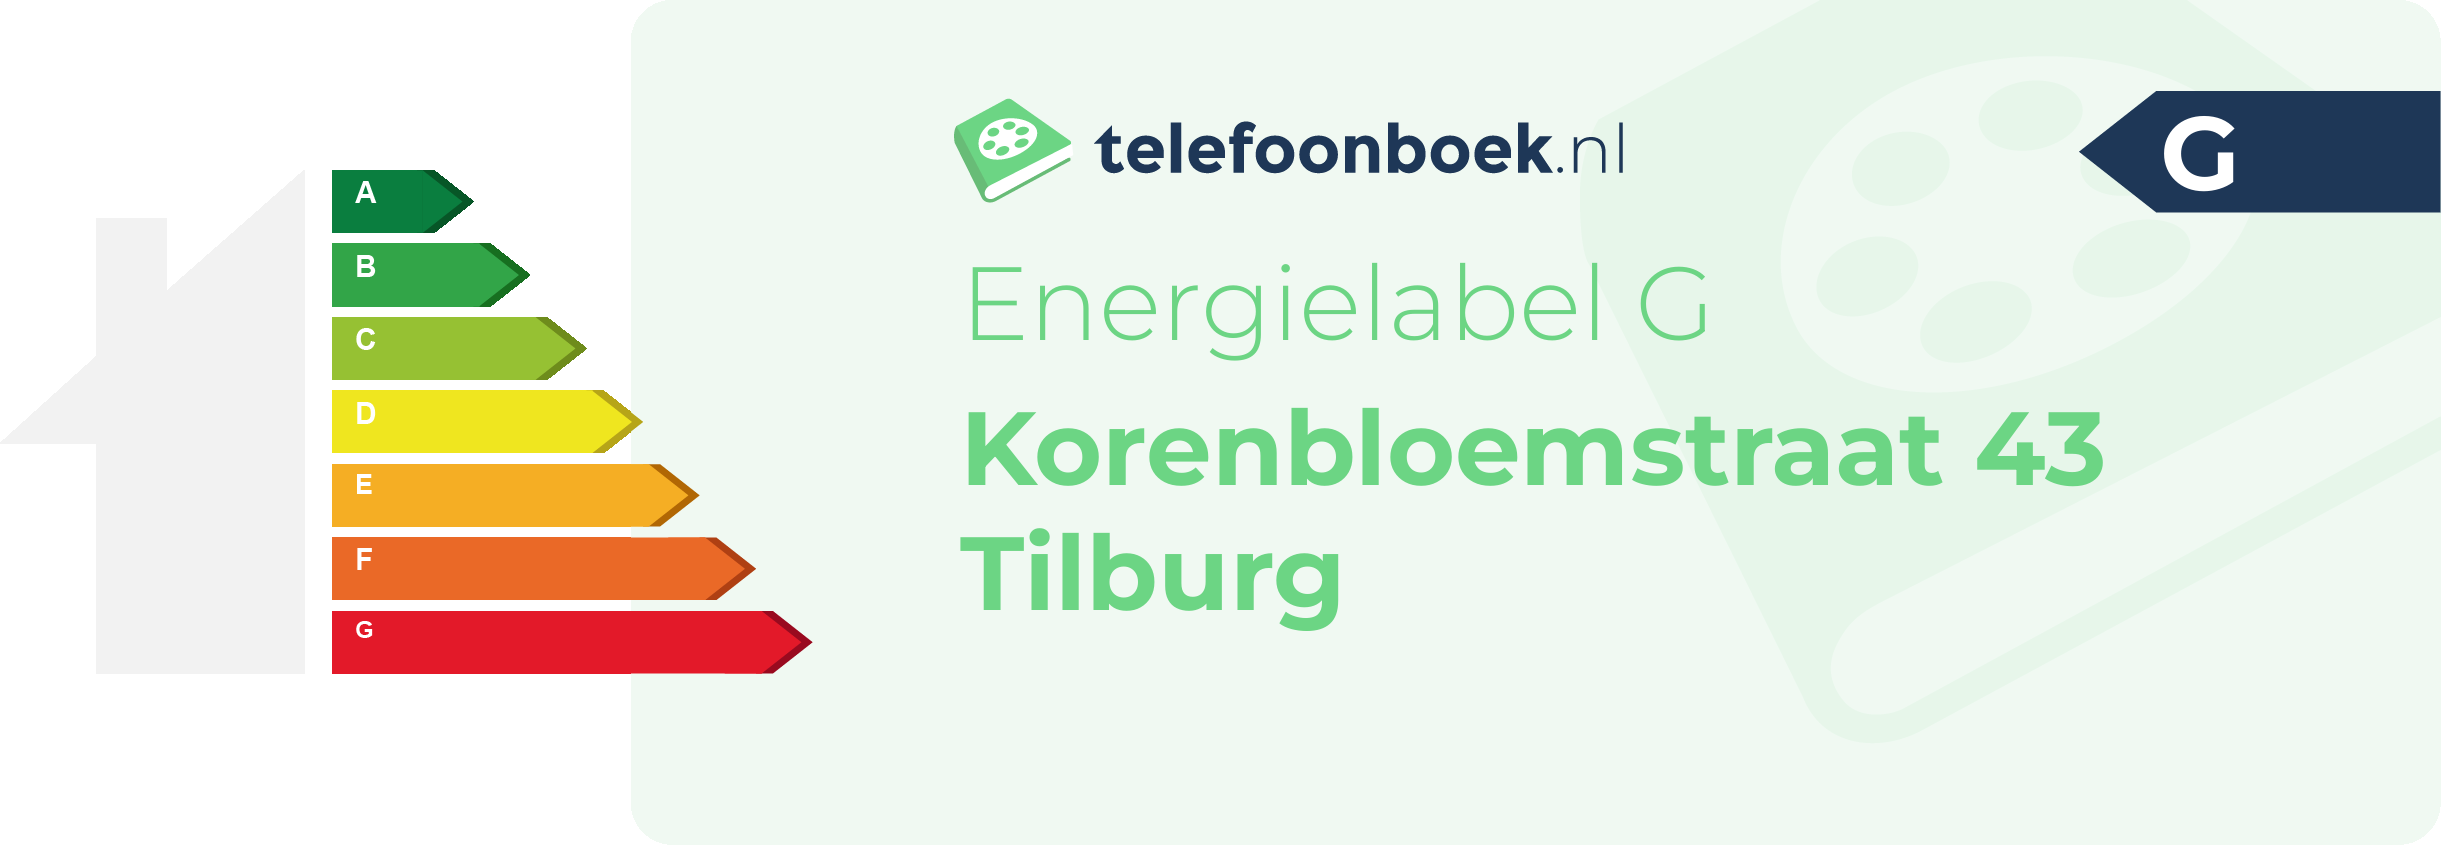 Energielabel Korenbloemstraat 43 Tilburg